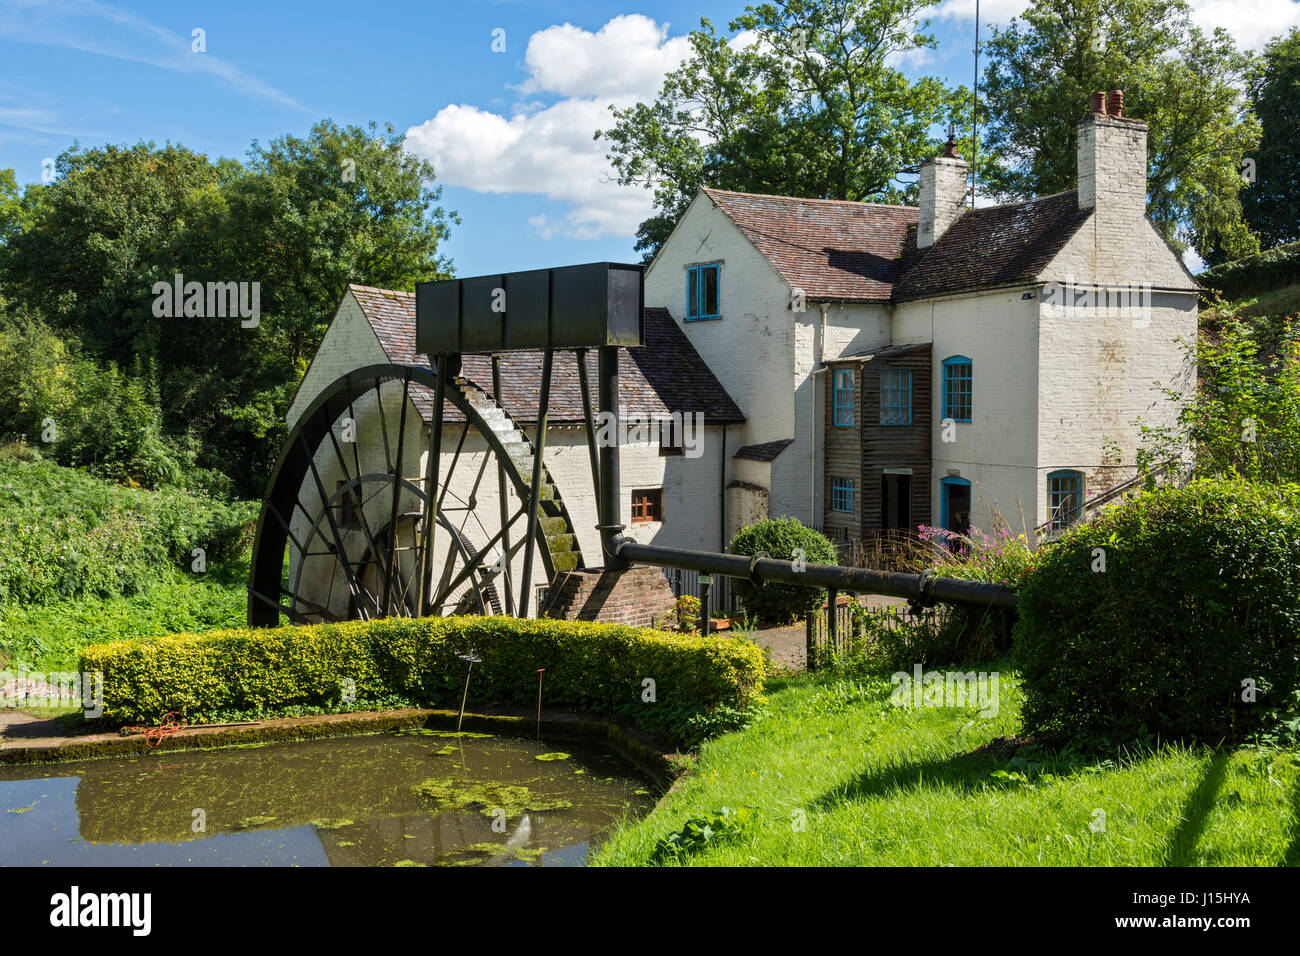 Daniel's Mill à Eardington, près de Bridgnorth, Shropshire, England, UK. Banque D'Images